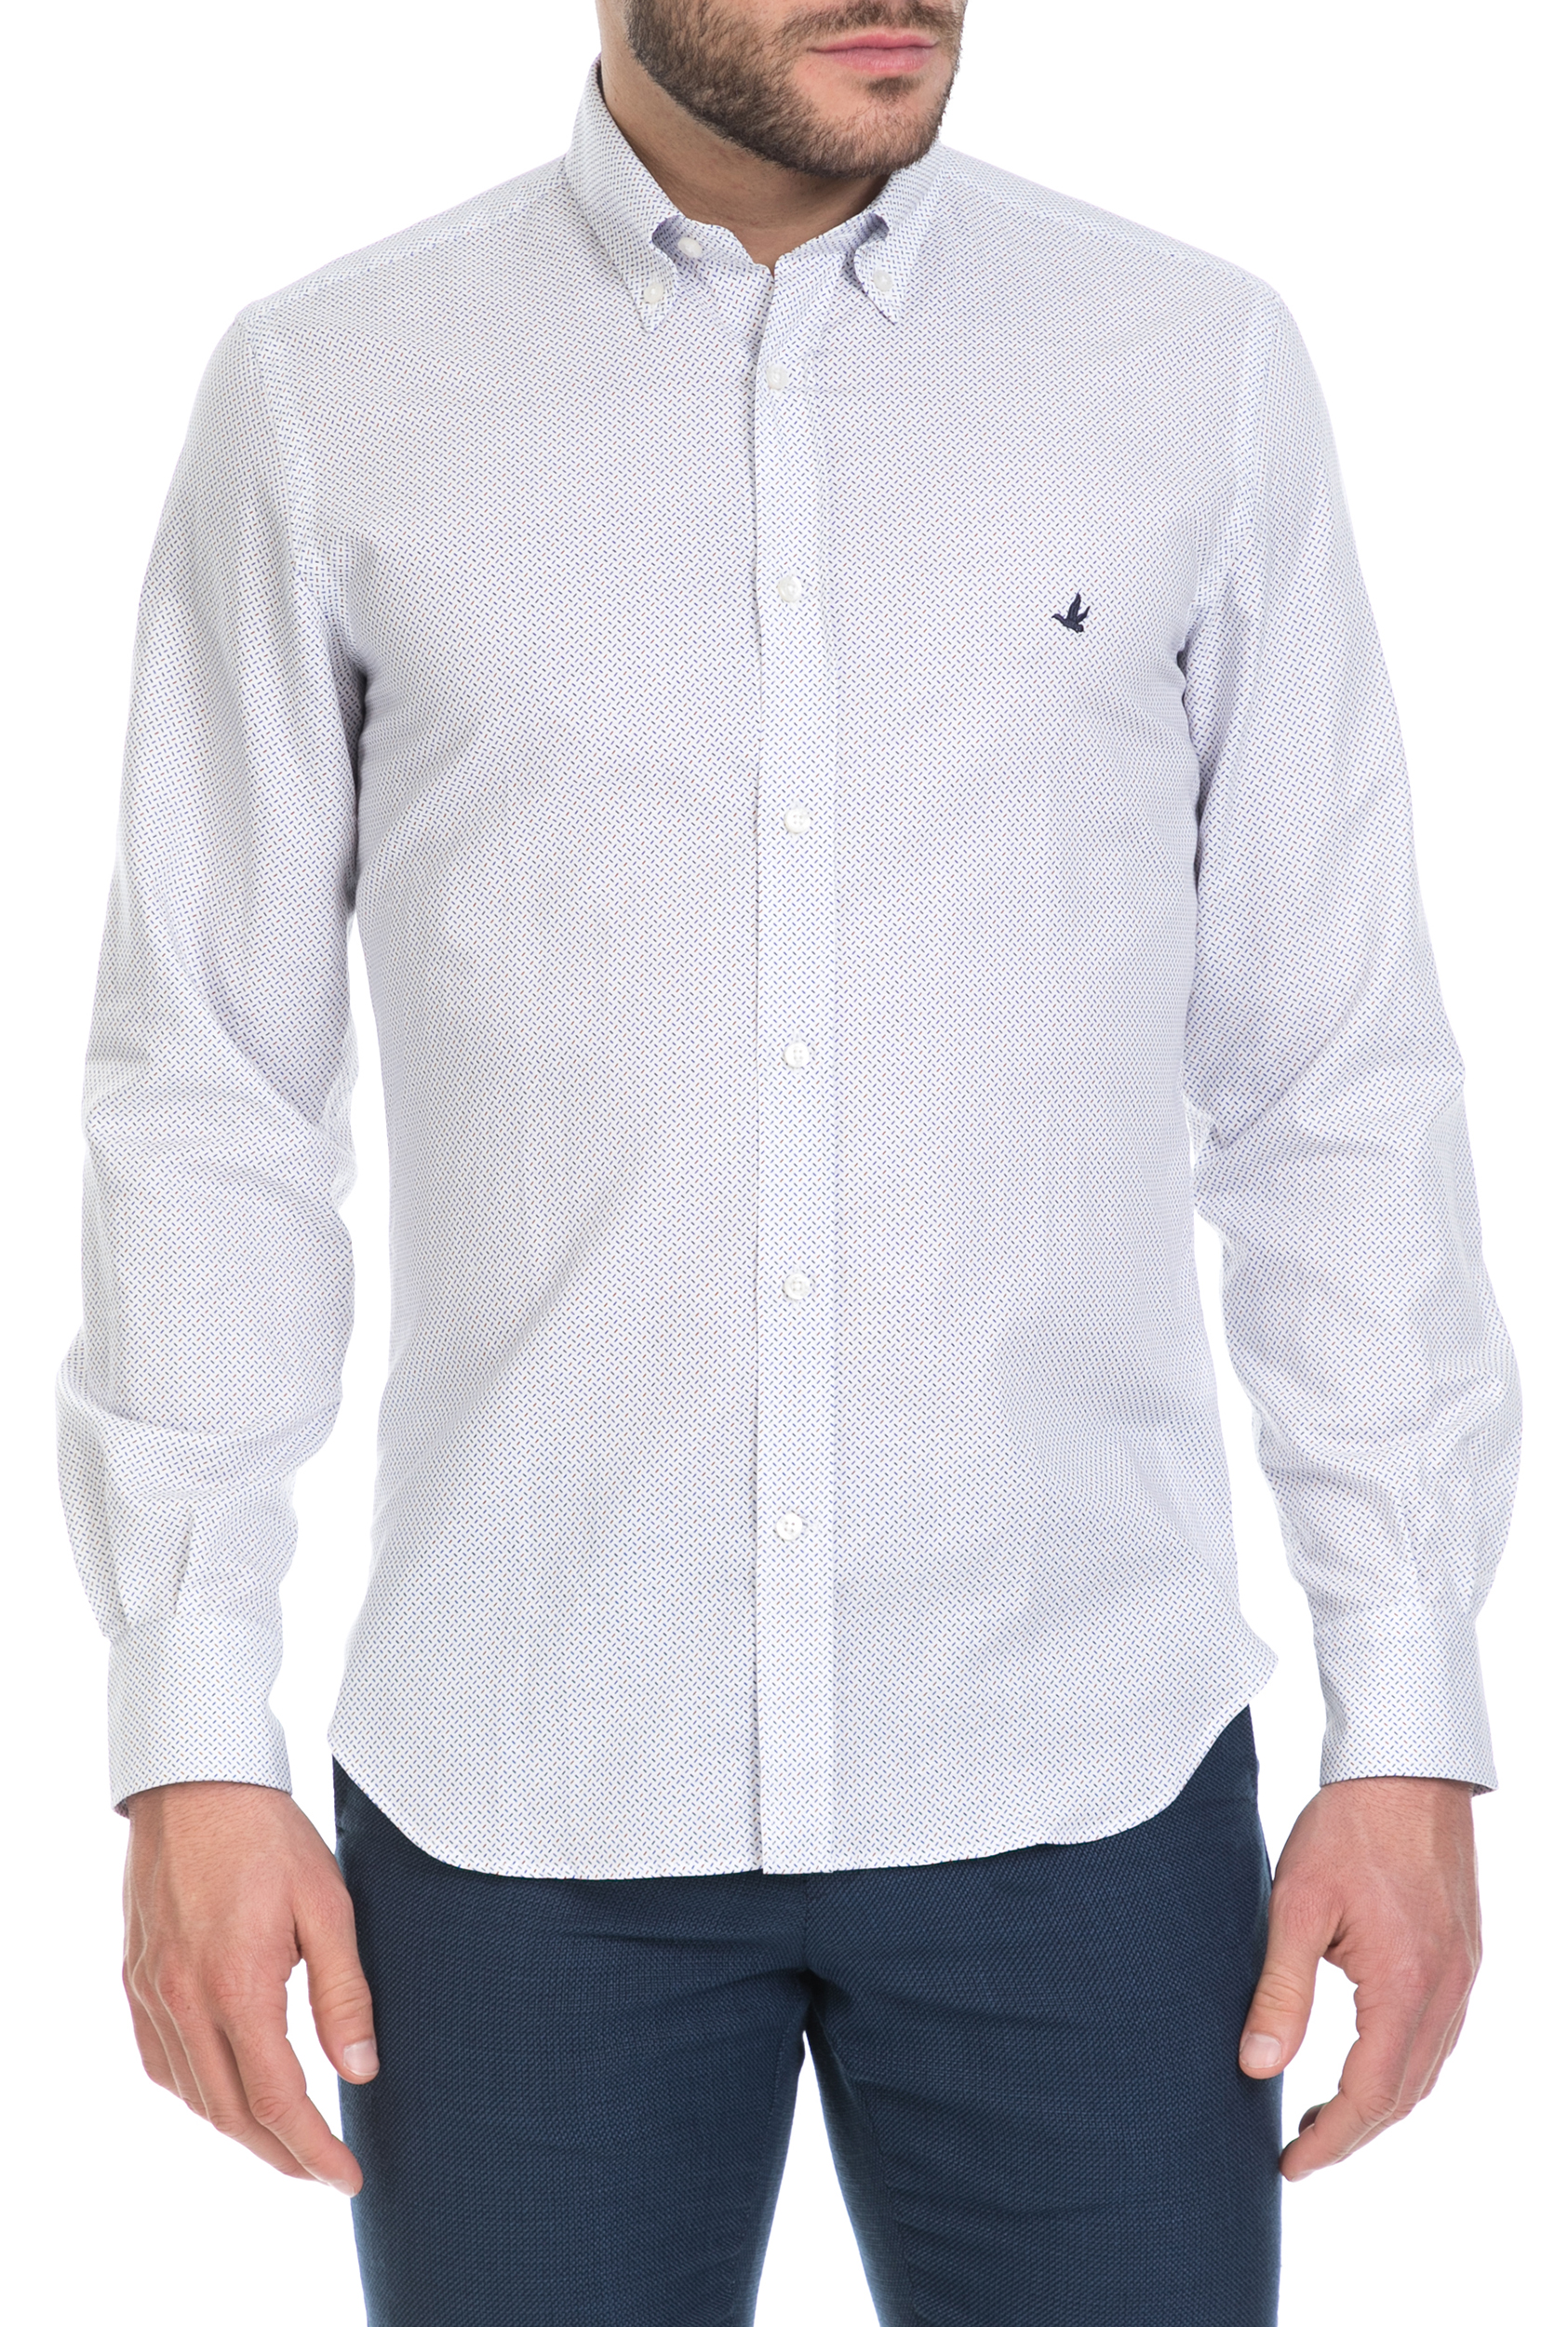 BROOKSFIELD - Ανδρικό μακρυμάνικο πουκάμισο Brooksfield λευκό